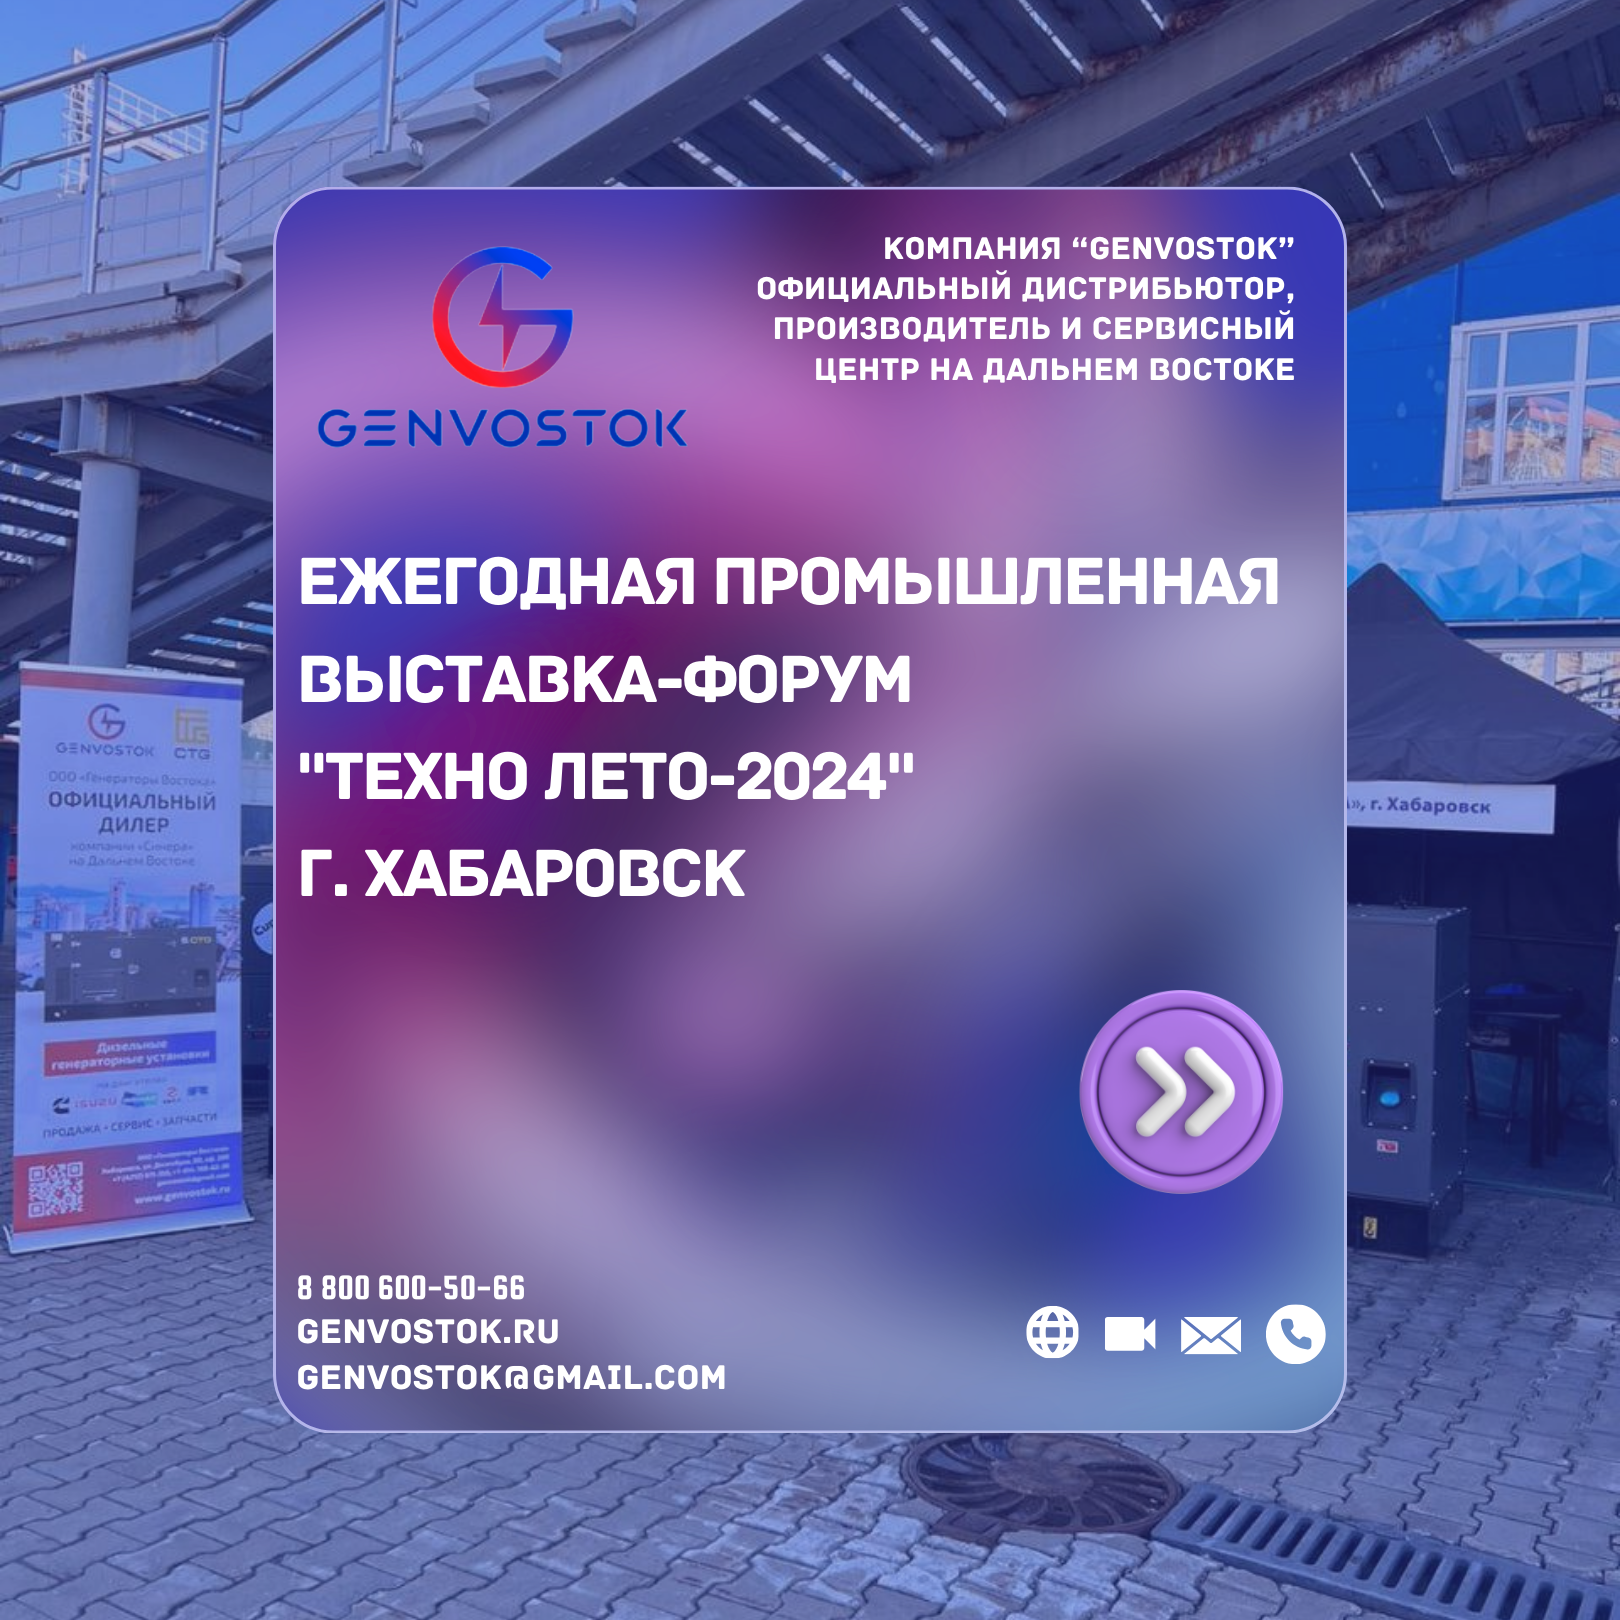 Ежегодная промышленная выставка-форум "ТЕХНО ЛЕТО-2024" г. Хабаровск